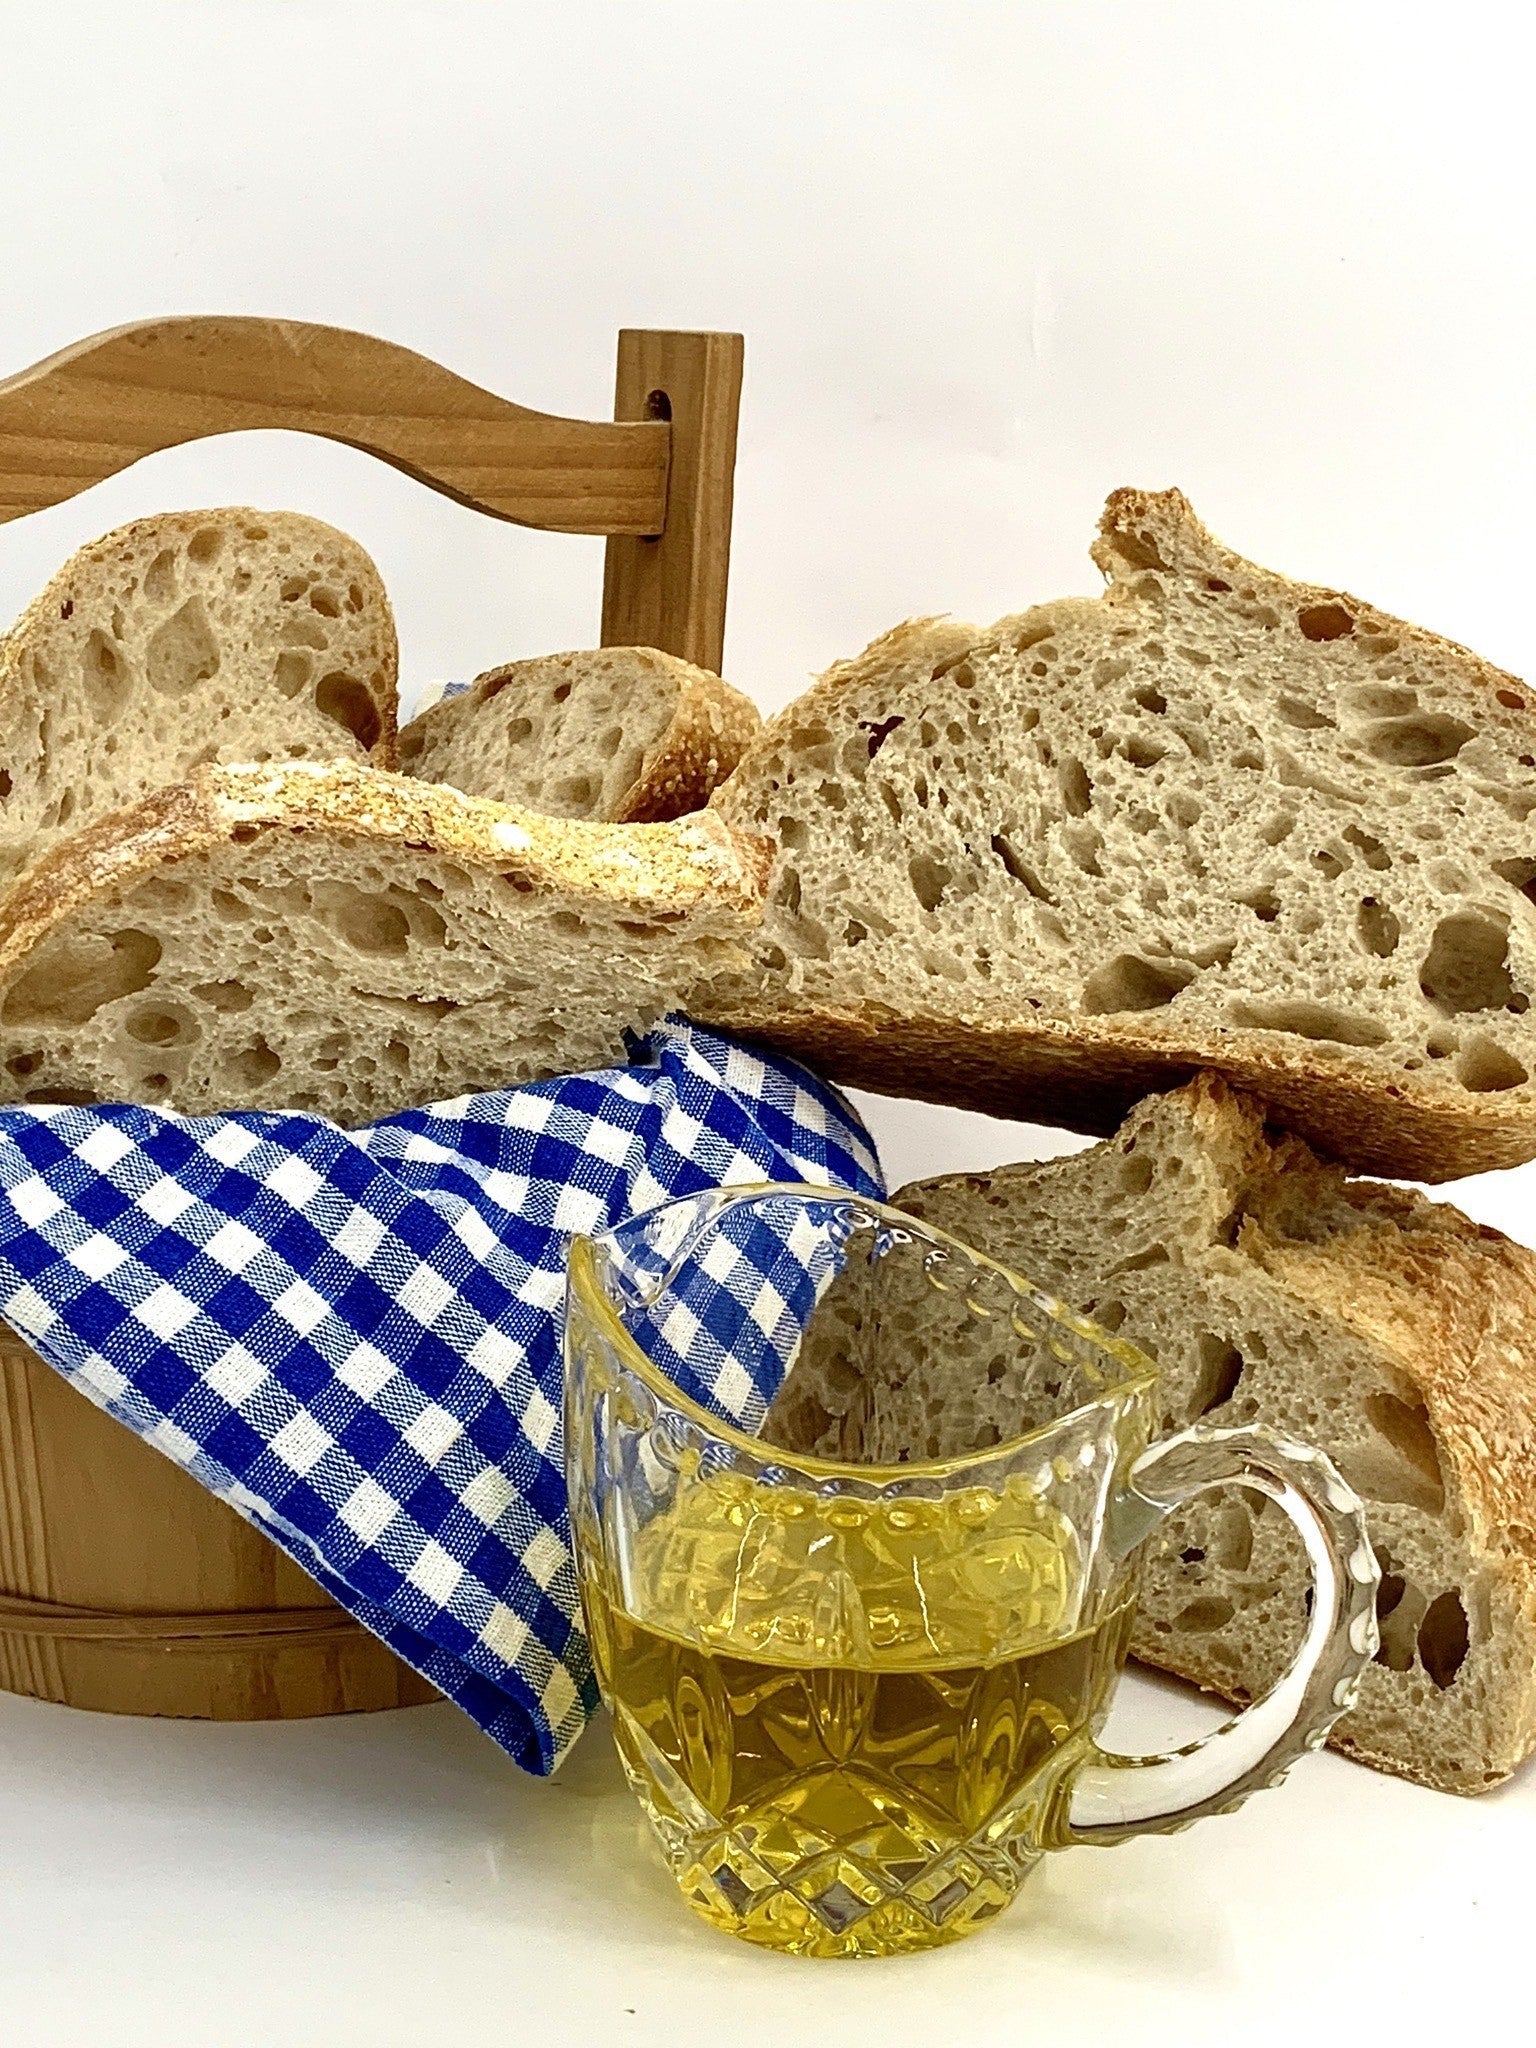 Kolijevka kruha - domaći kruh više vrsta - lokalitet